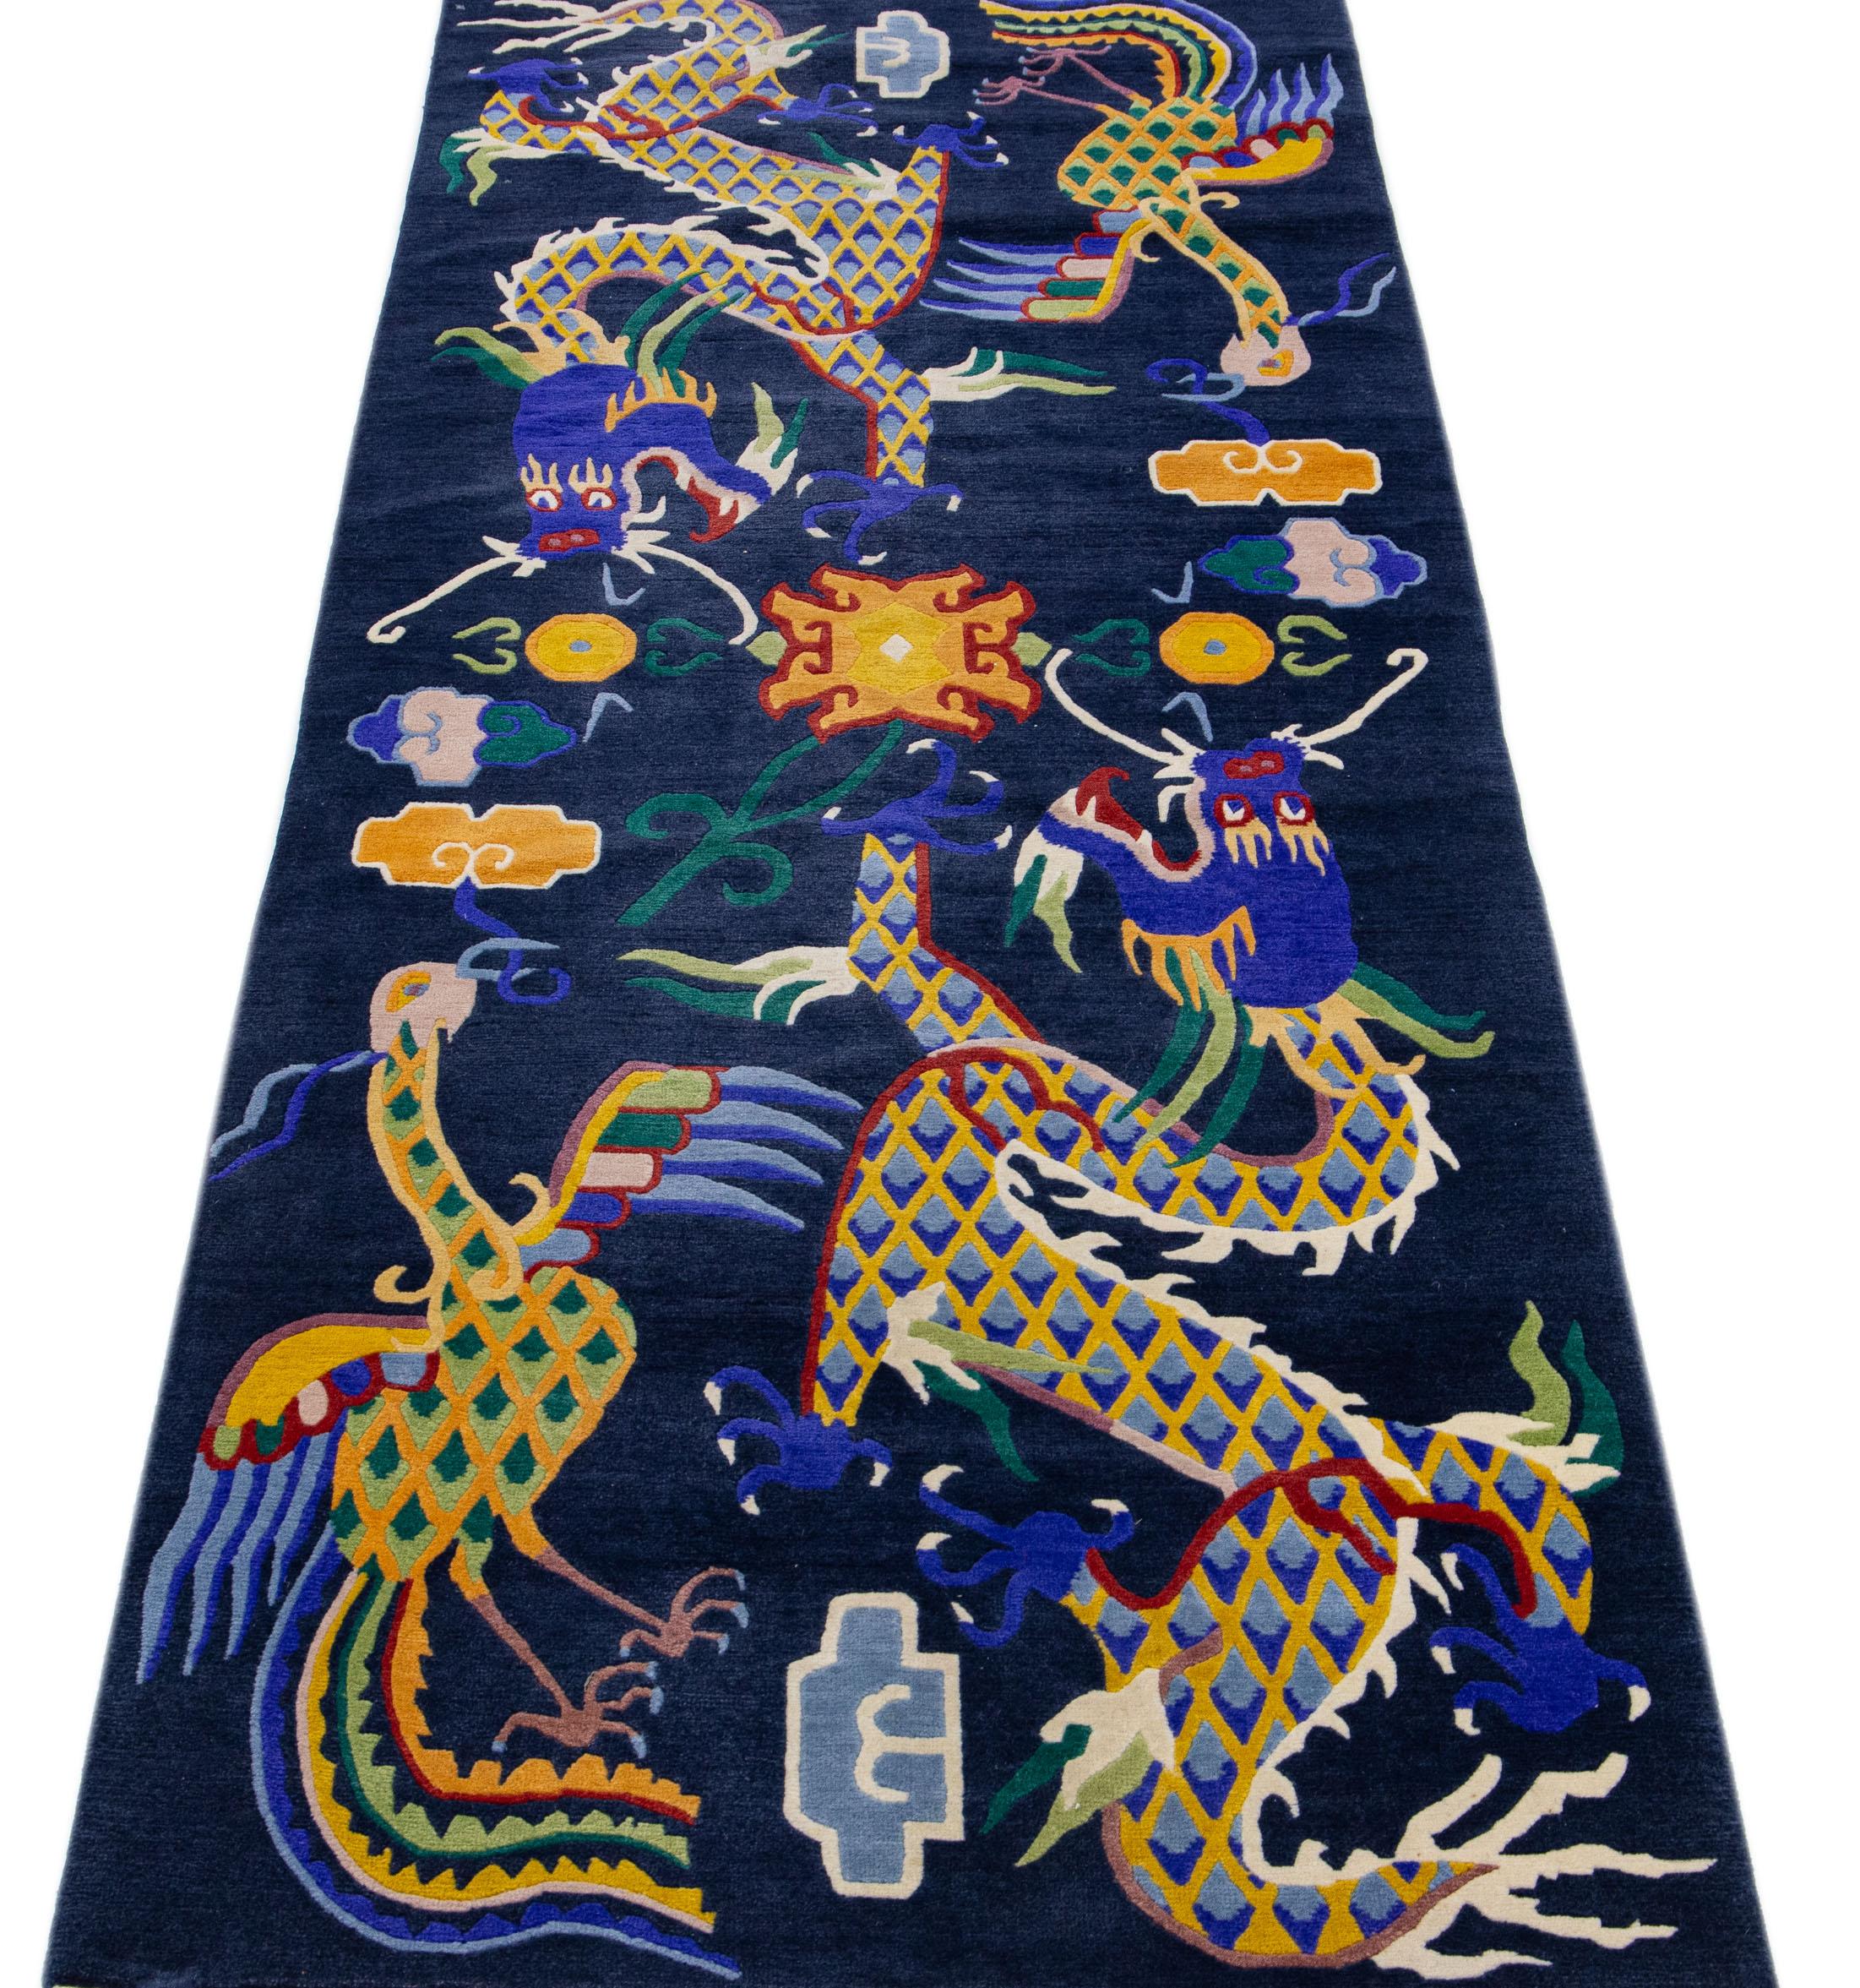 Magnifique tapis chinois ancien en laine nouée à la main, avec un champ bleu marine et des accents multicolores sur l'ensemble du motif traditionnel du dragon chinois. 

Ce tapis mesure 3' x 8'.